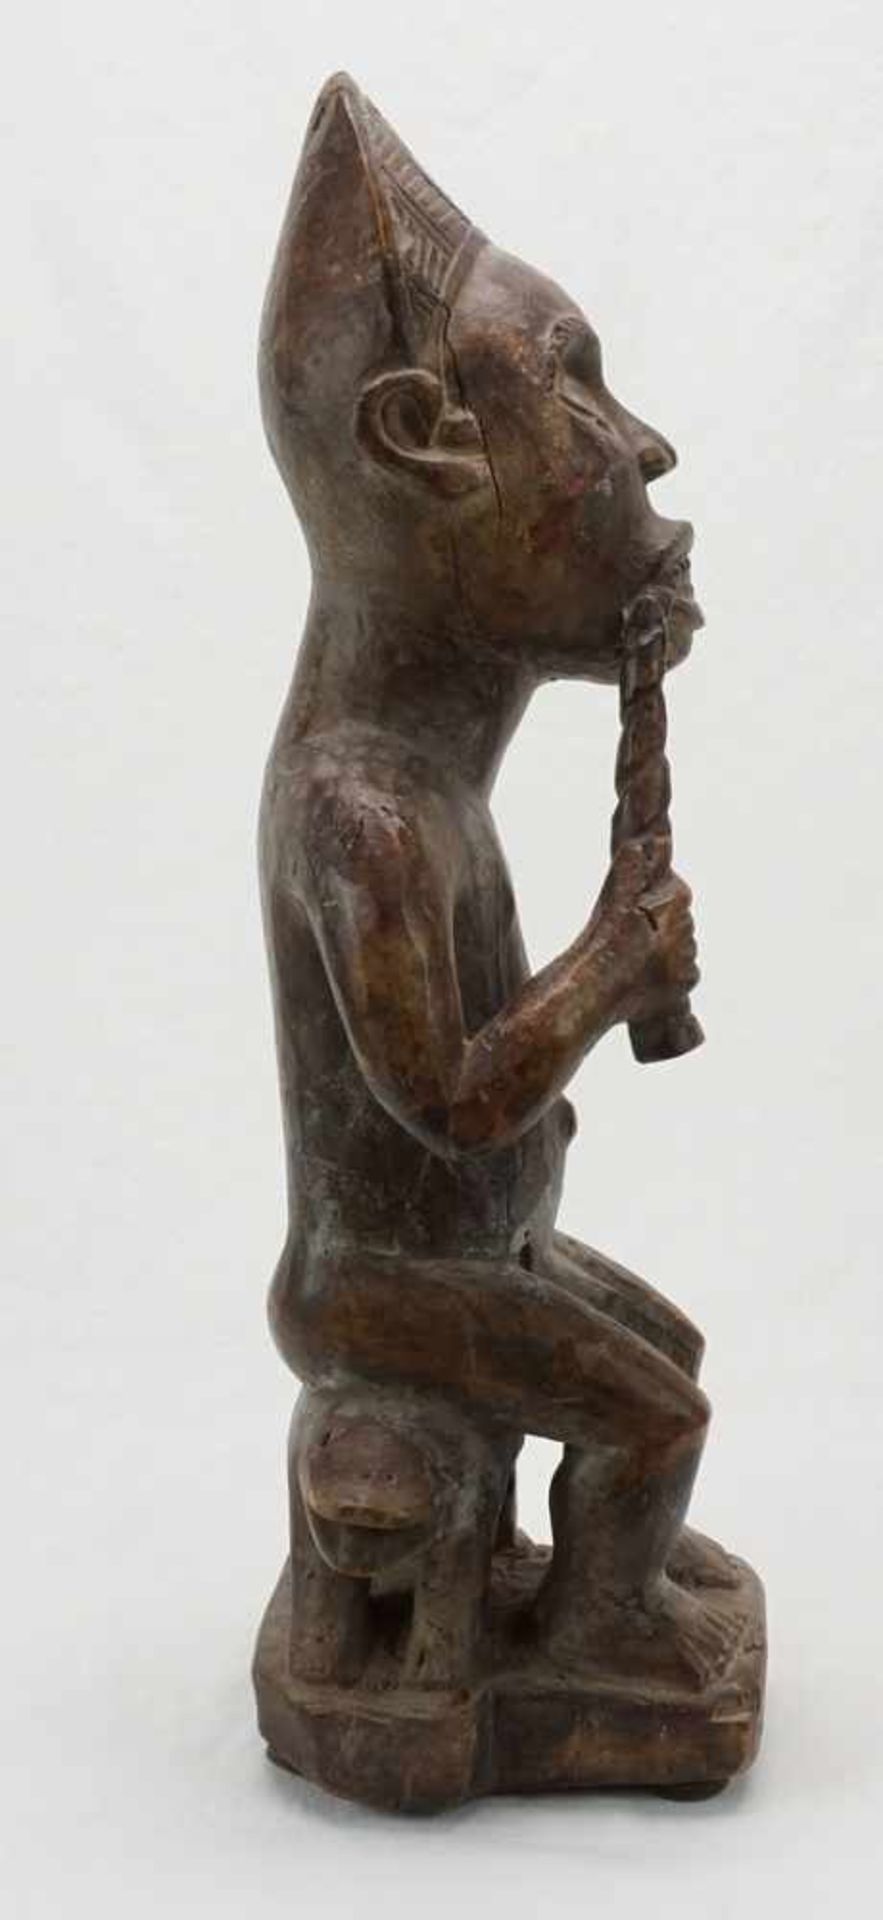 Vili Würdenträger, Gabun, DR Kongo, 20. Jh.Holz, König auf Thron sitzend, in der rechten Hand eine - Image 3 of 5